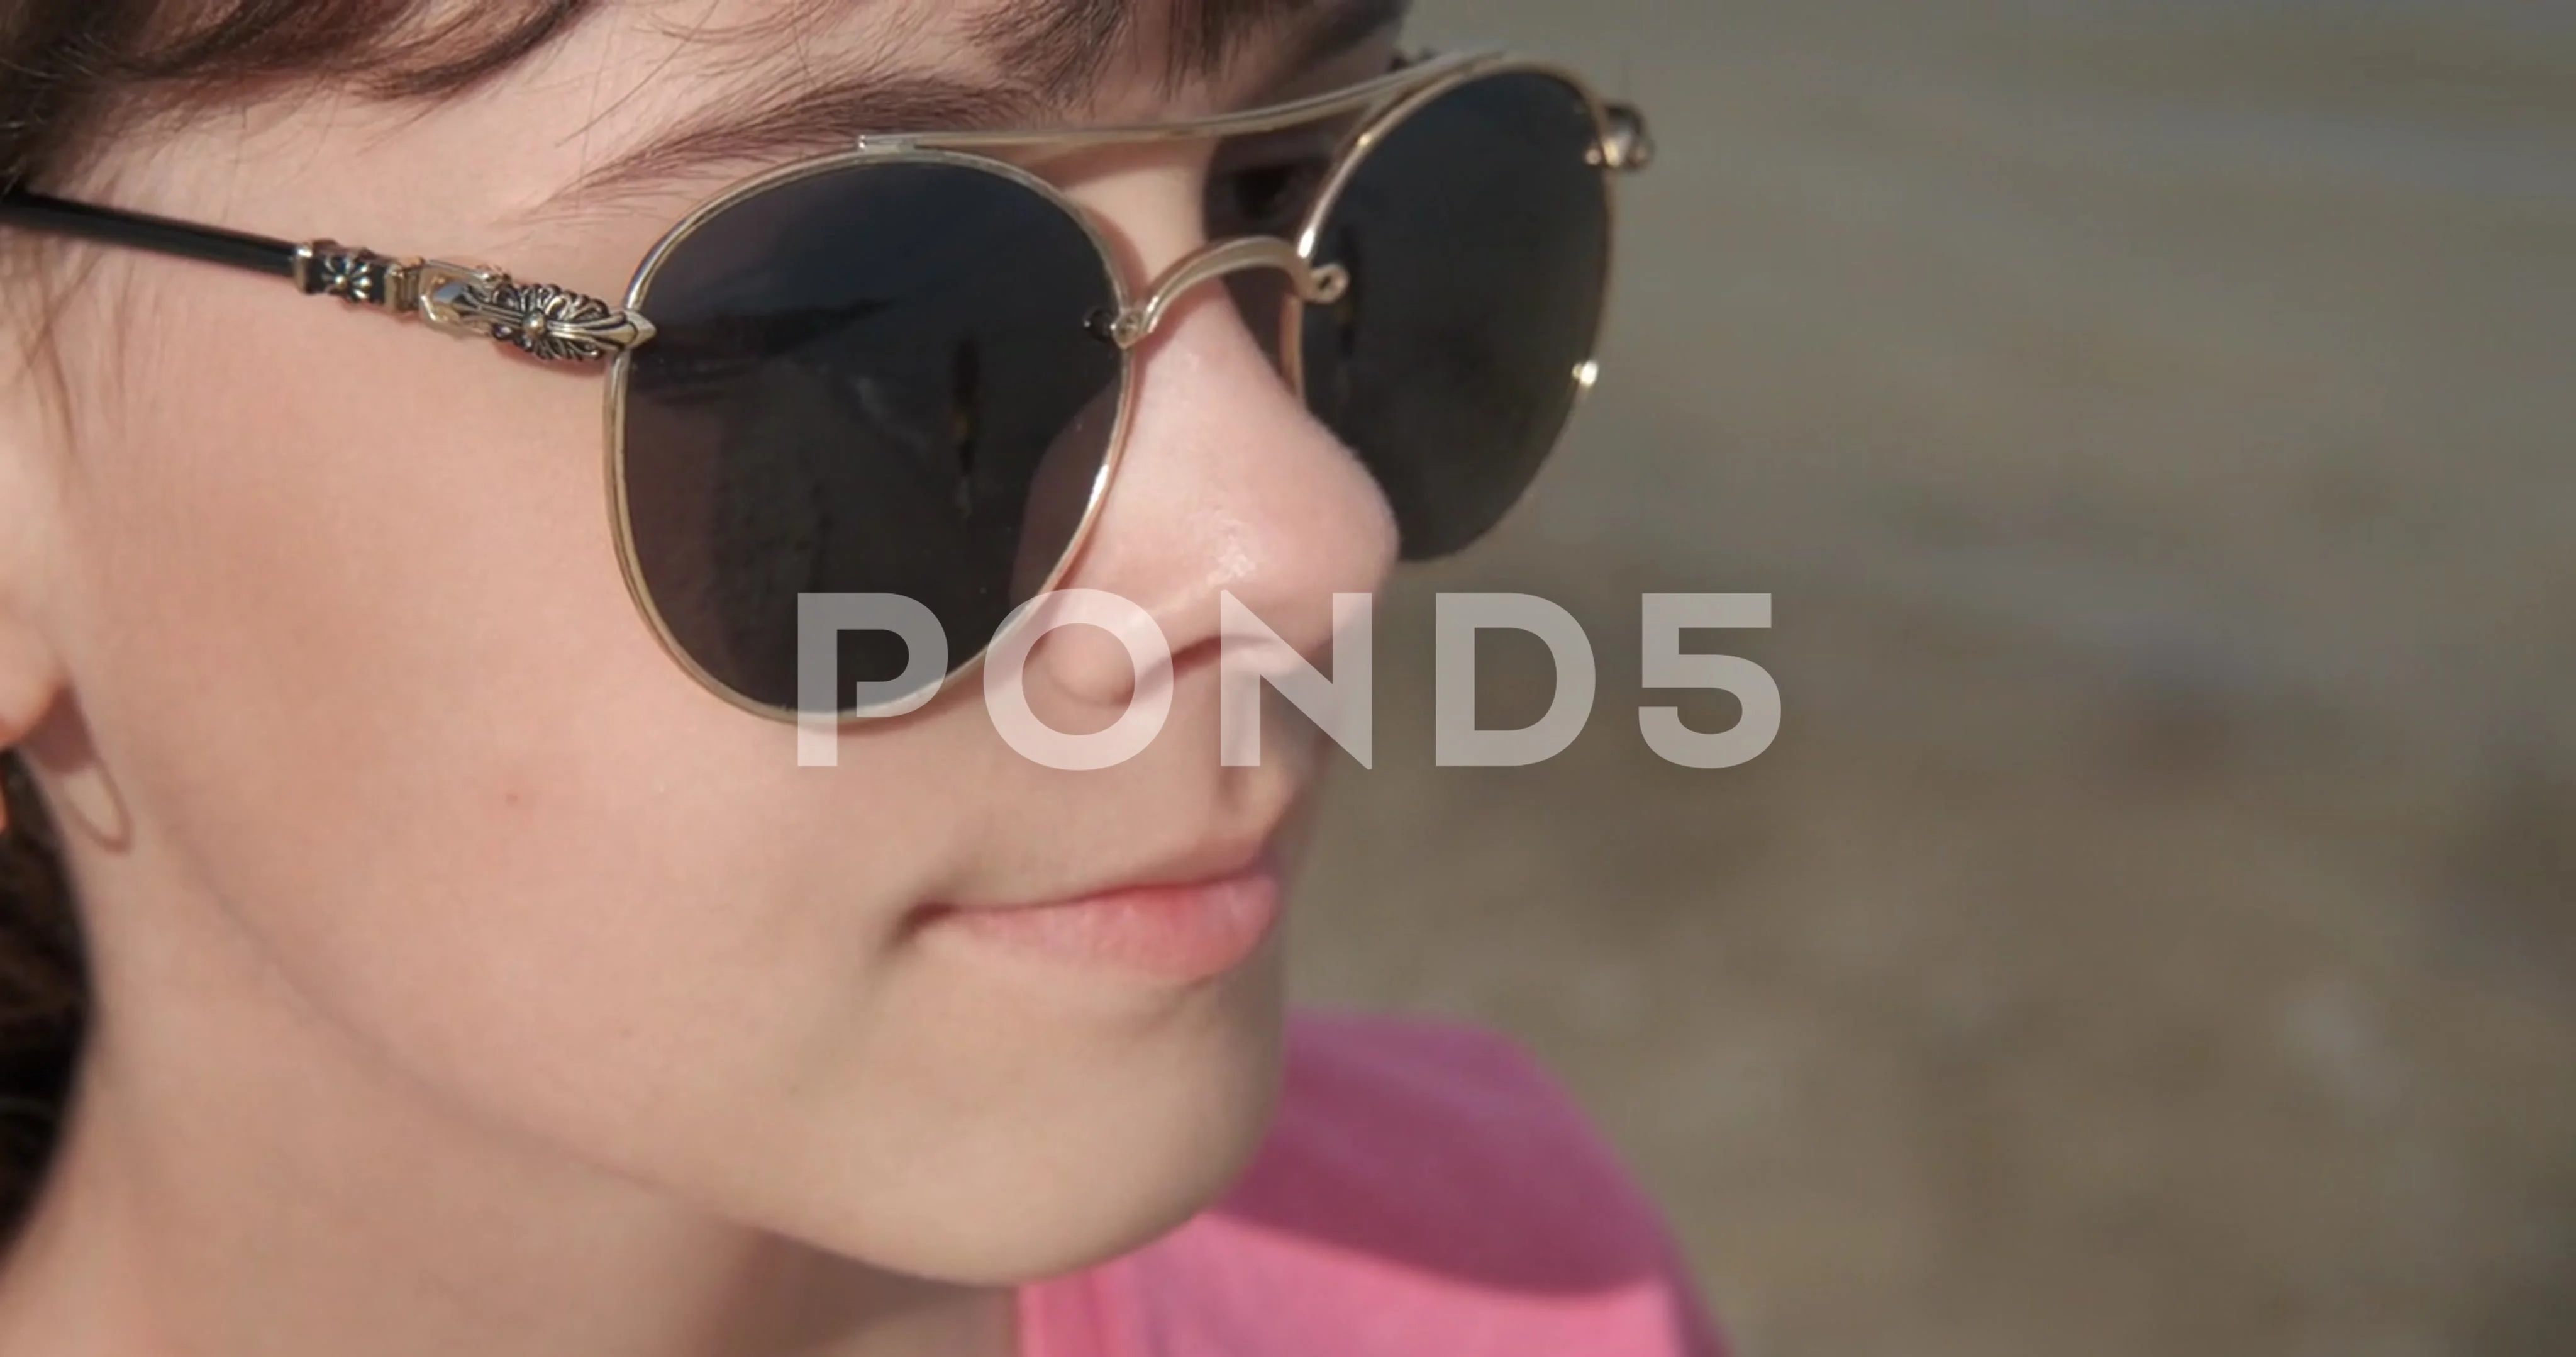 https://images.pond5.com/relaxing-teen-sunglasses-beach-footage-172201234_prevstill.jpeg